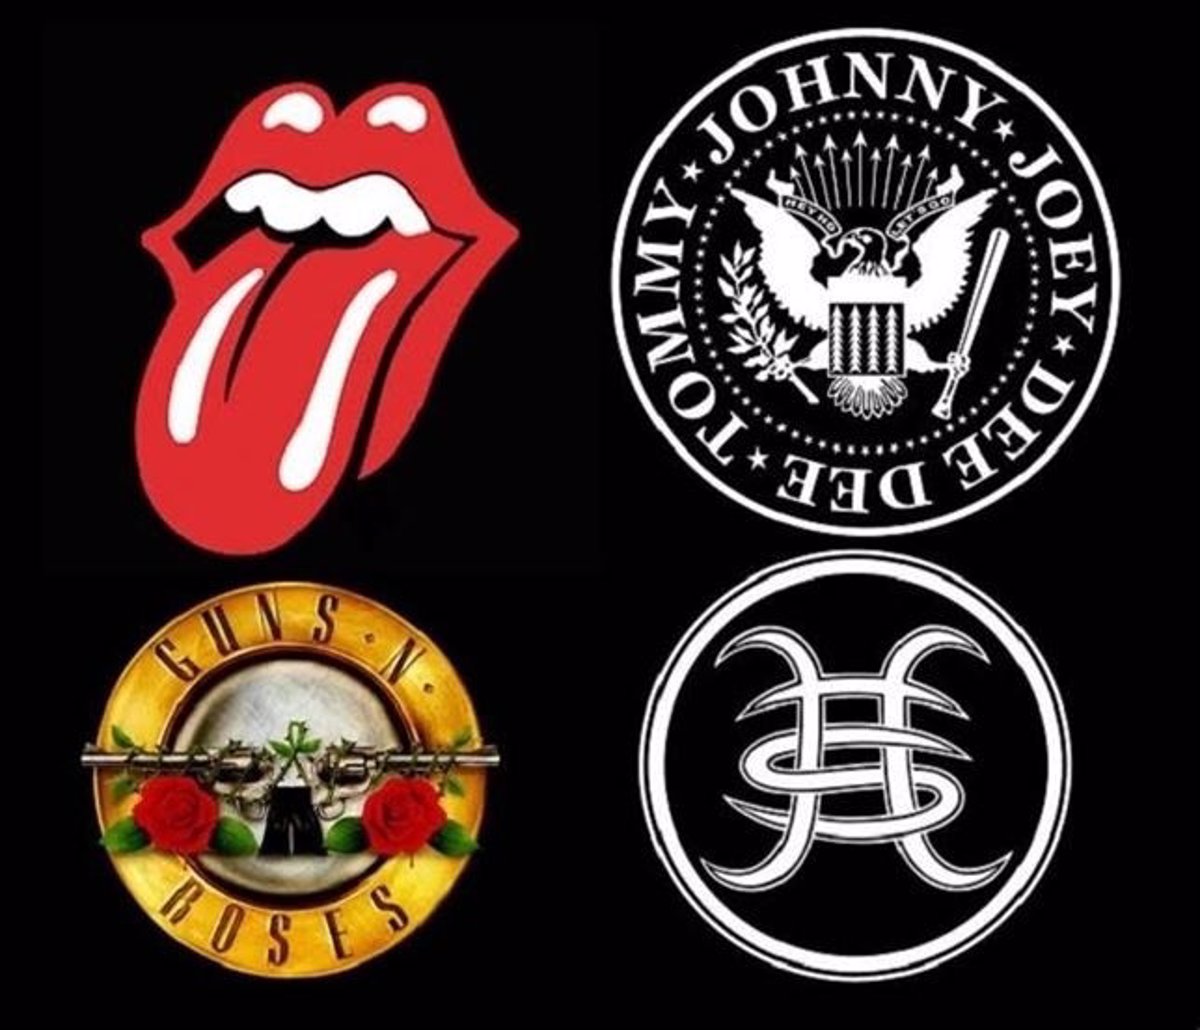 Los logos más famosos de la música (1)